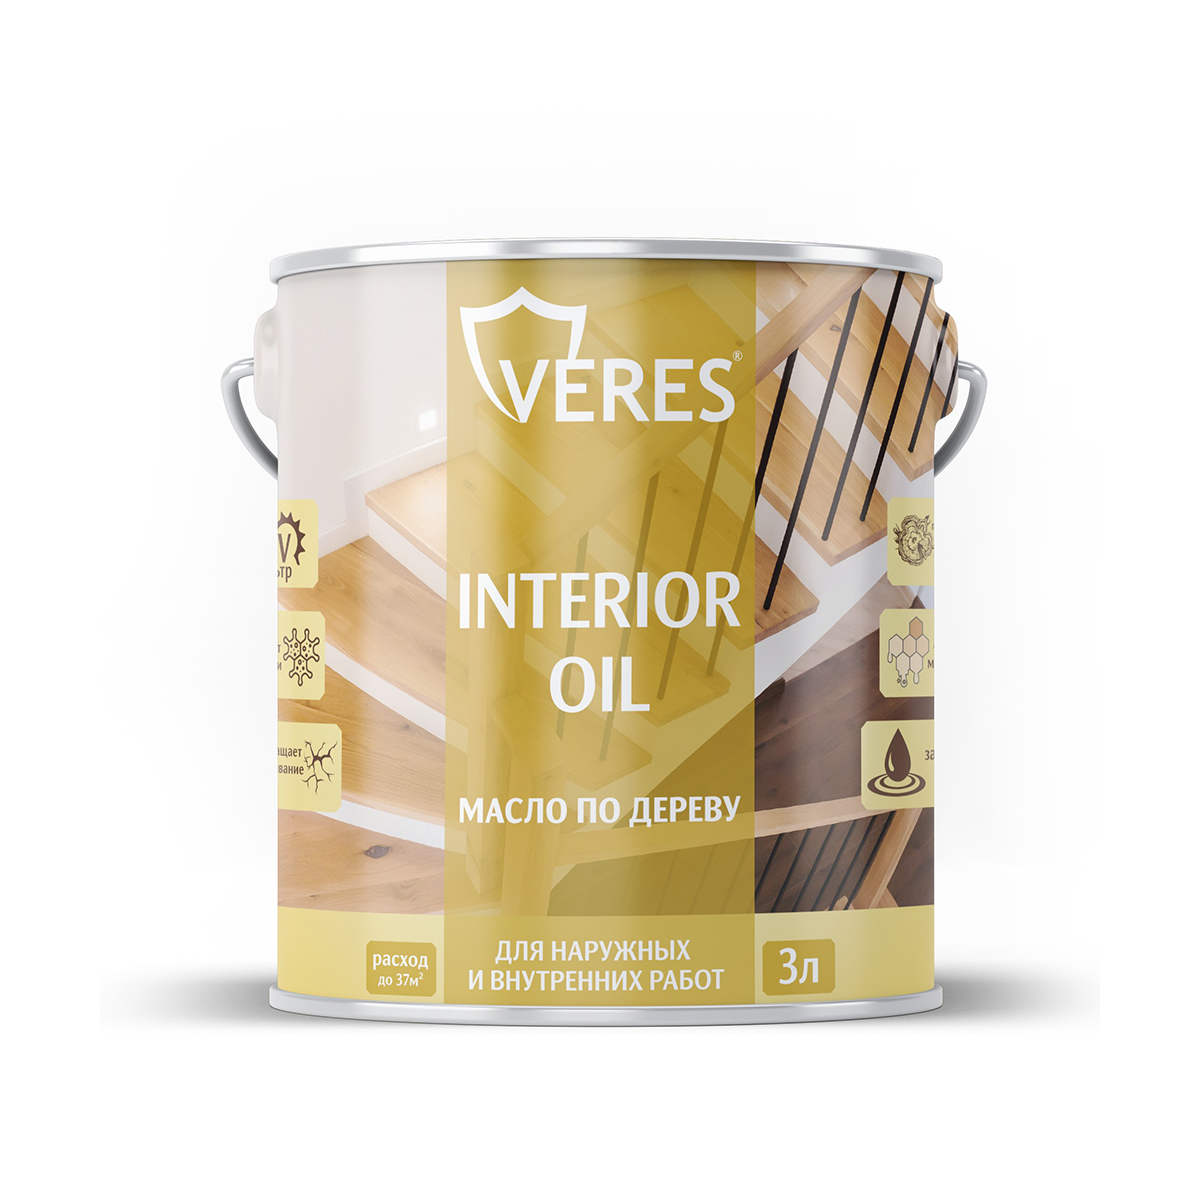 Масло для дерева Veres Interior Oil, 3 л, сосна масло для дерева